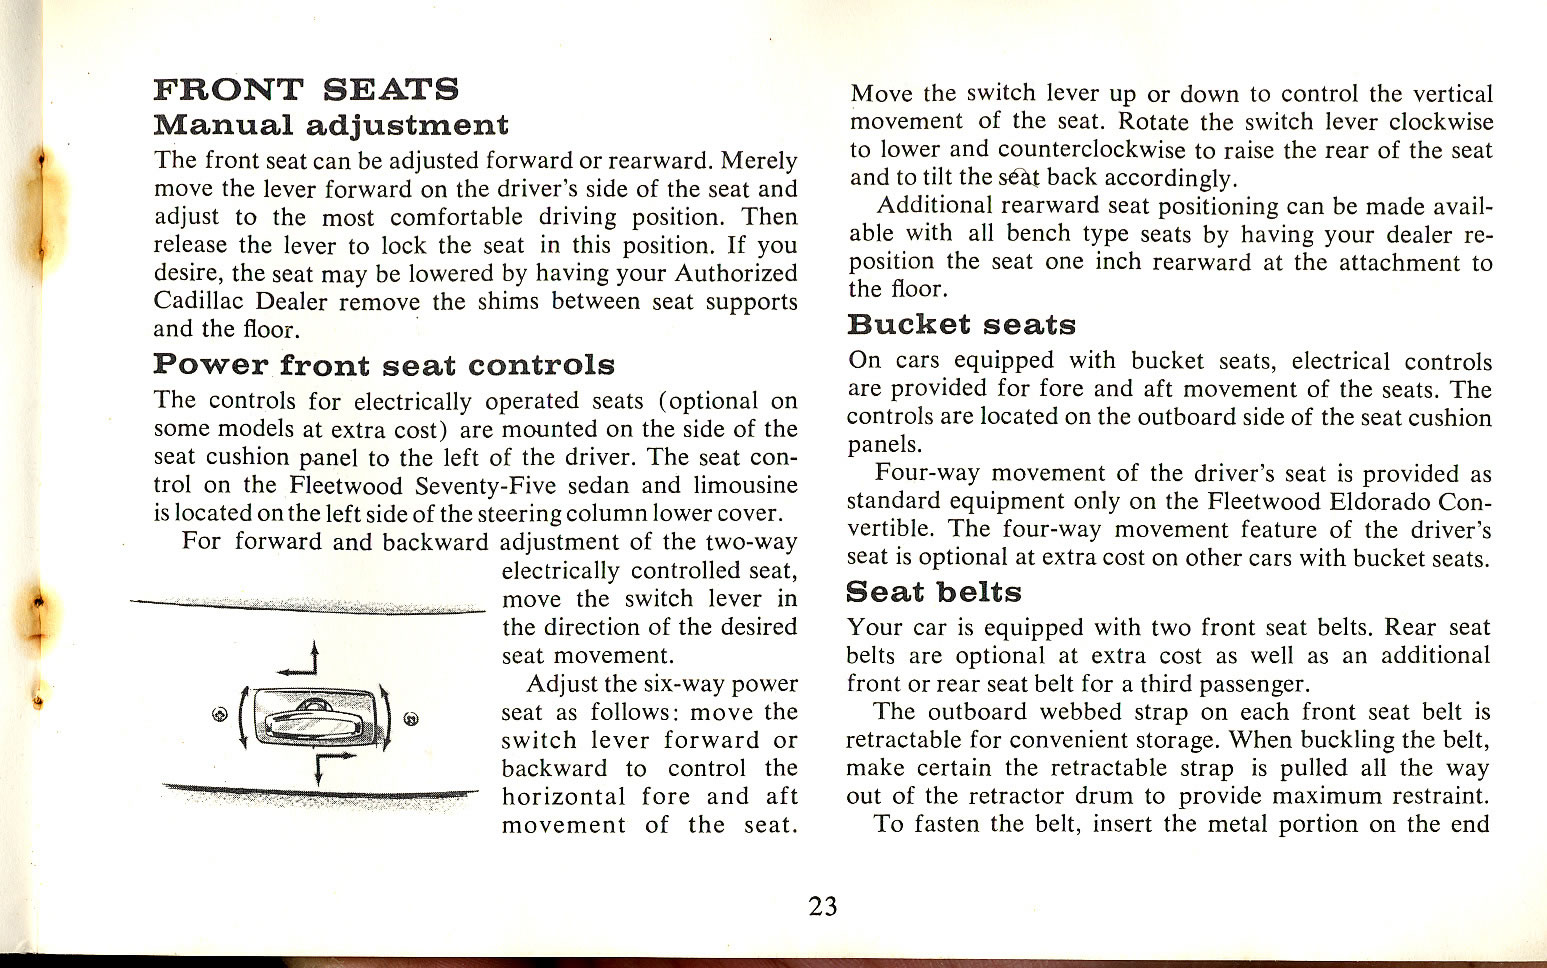 1965_Cadillac_Manual-23